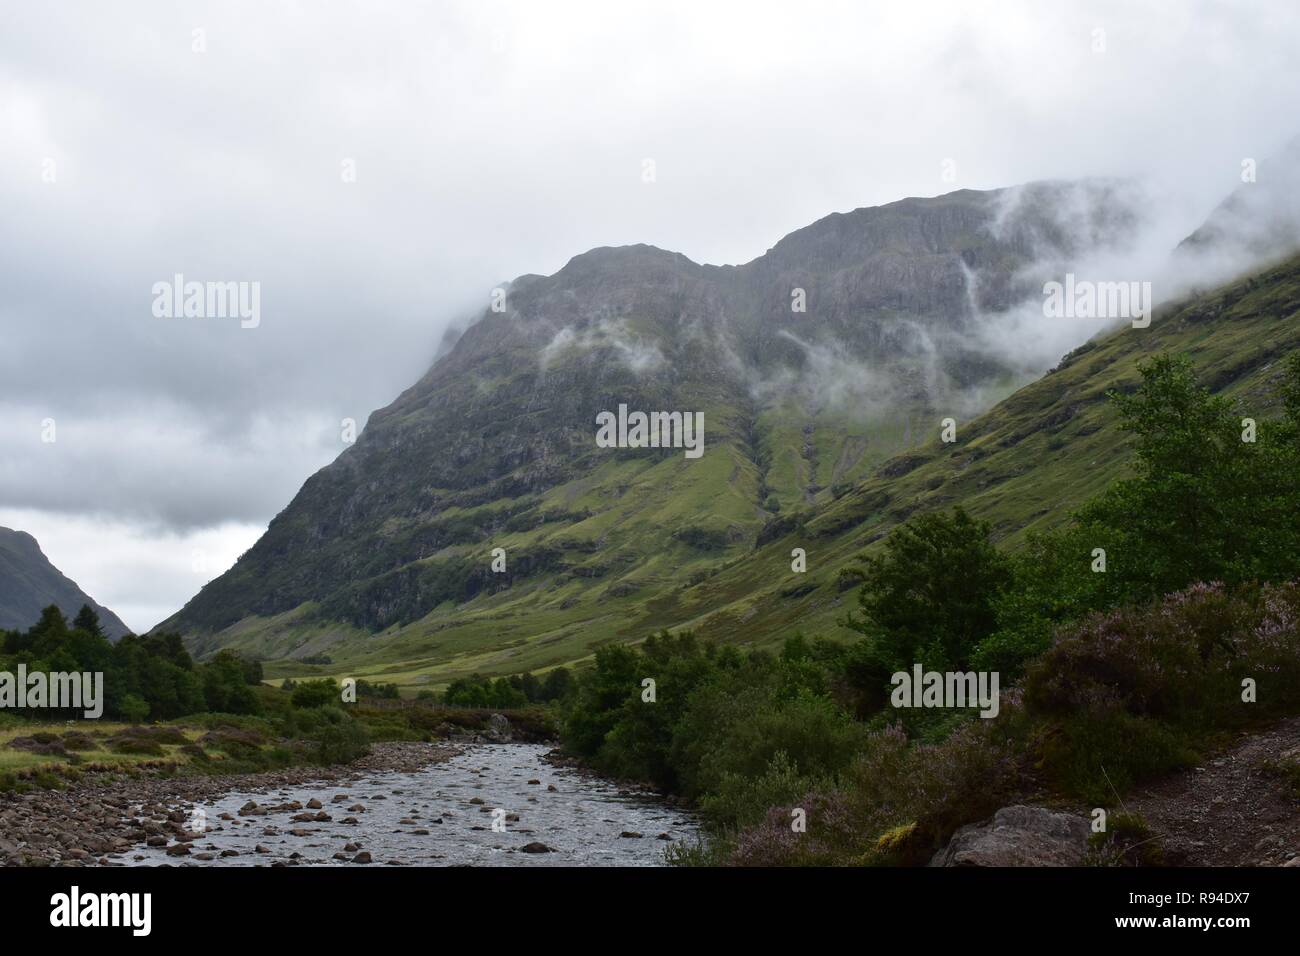 Coe fließt der Fluss durch das Tal von Glencoe Mountain Range in den schottischen Highlands. Auf einen Regen und bewölkt August Tag genommen. Stockfoto